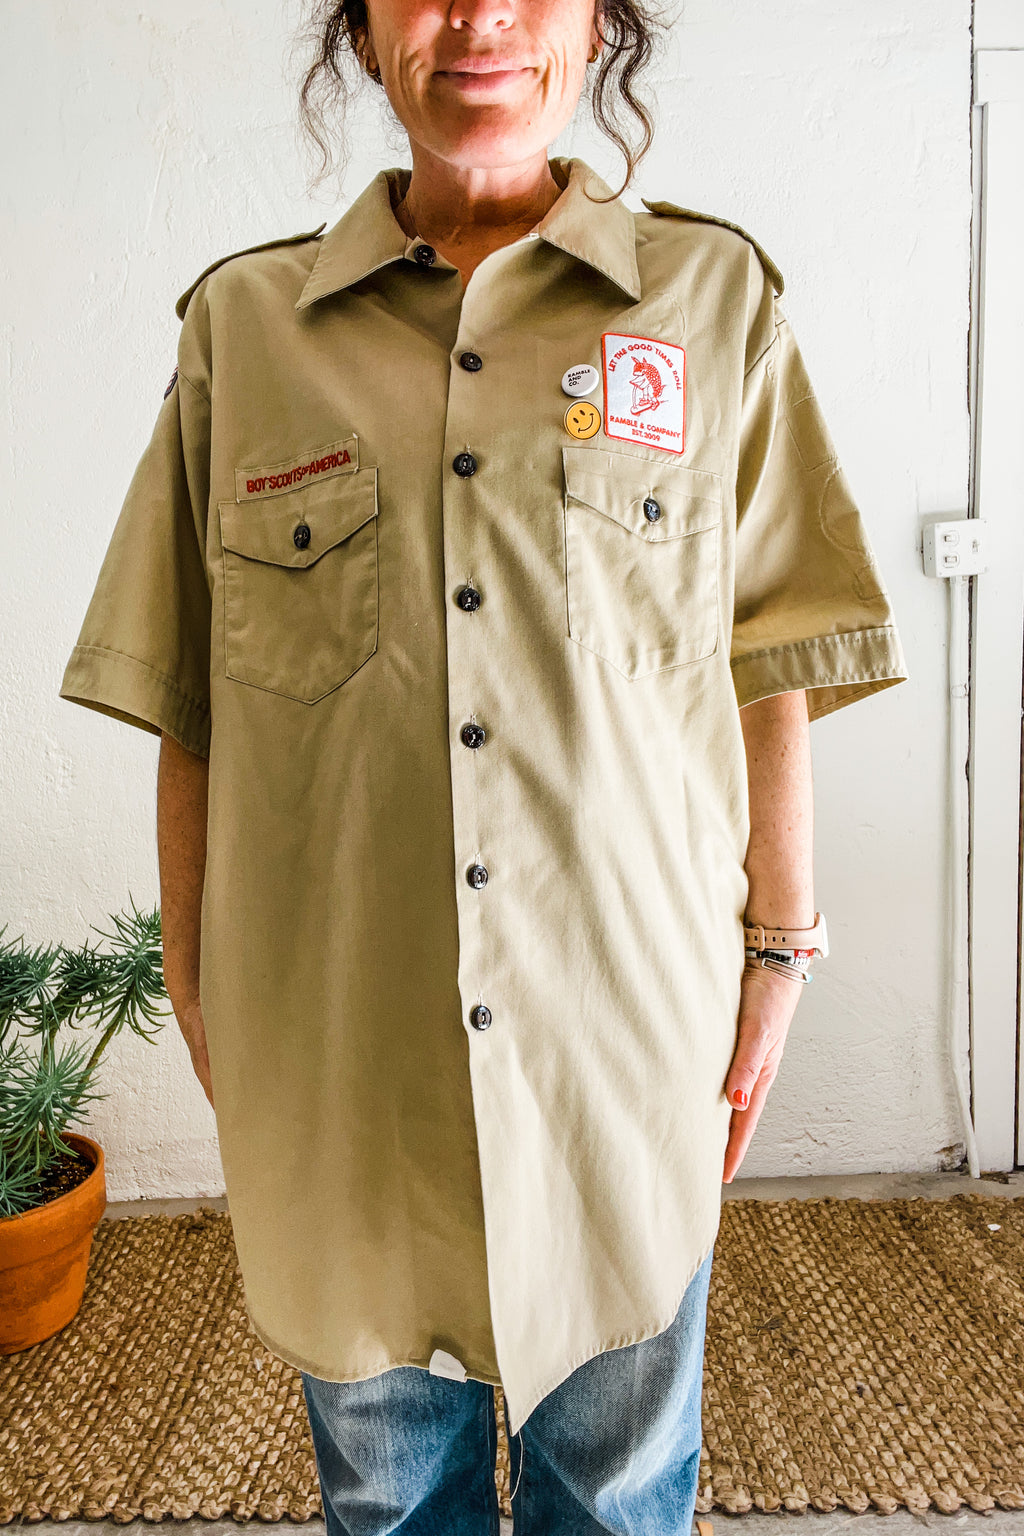 boy scouts shirt | vintage no. 03